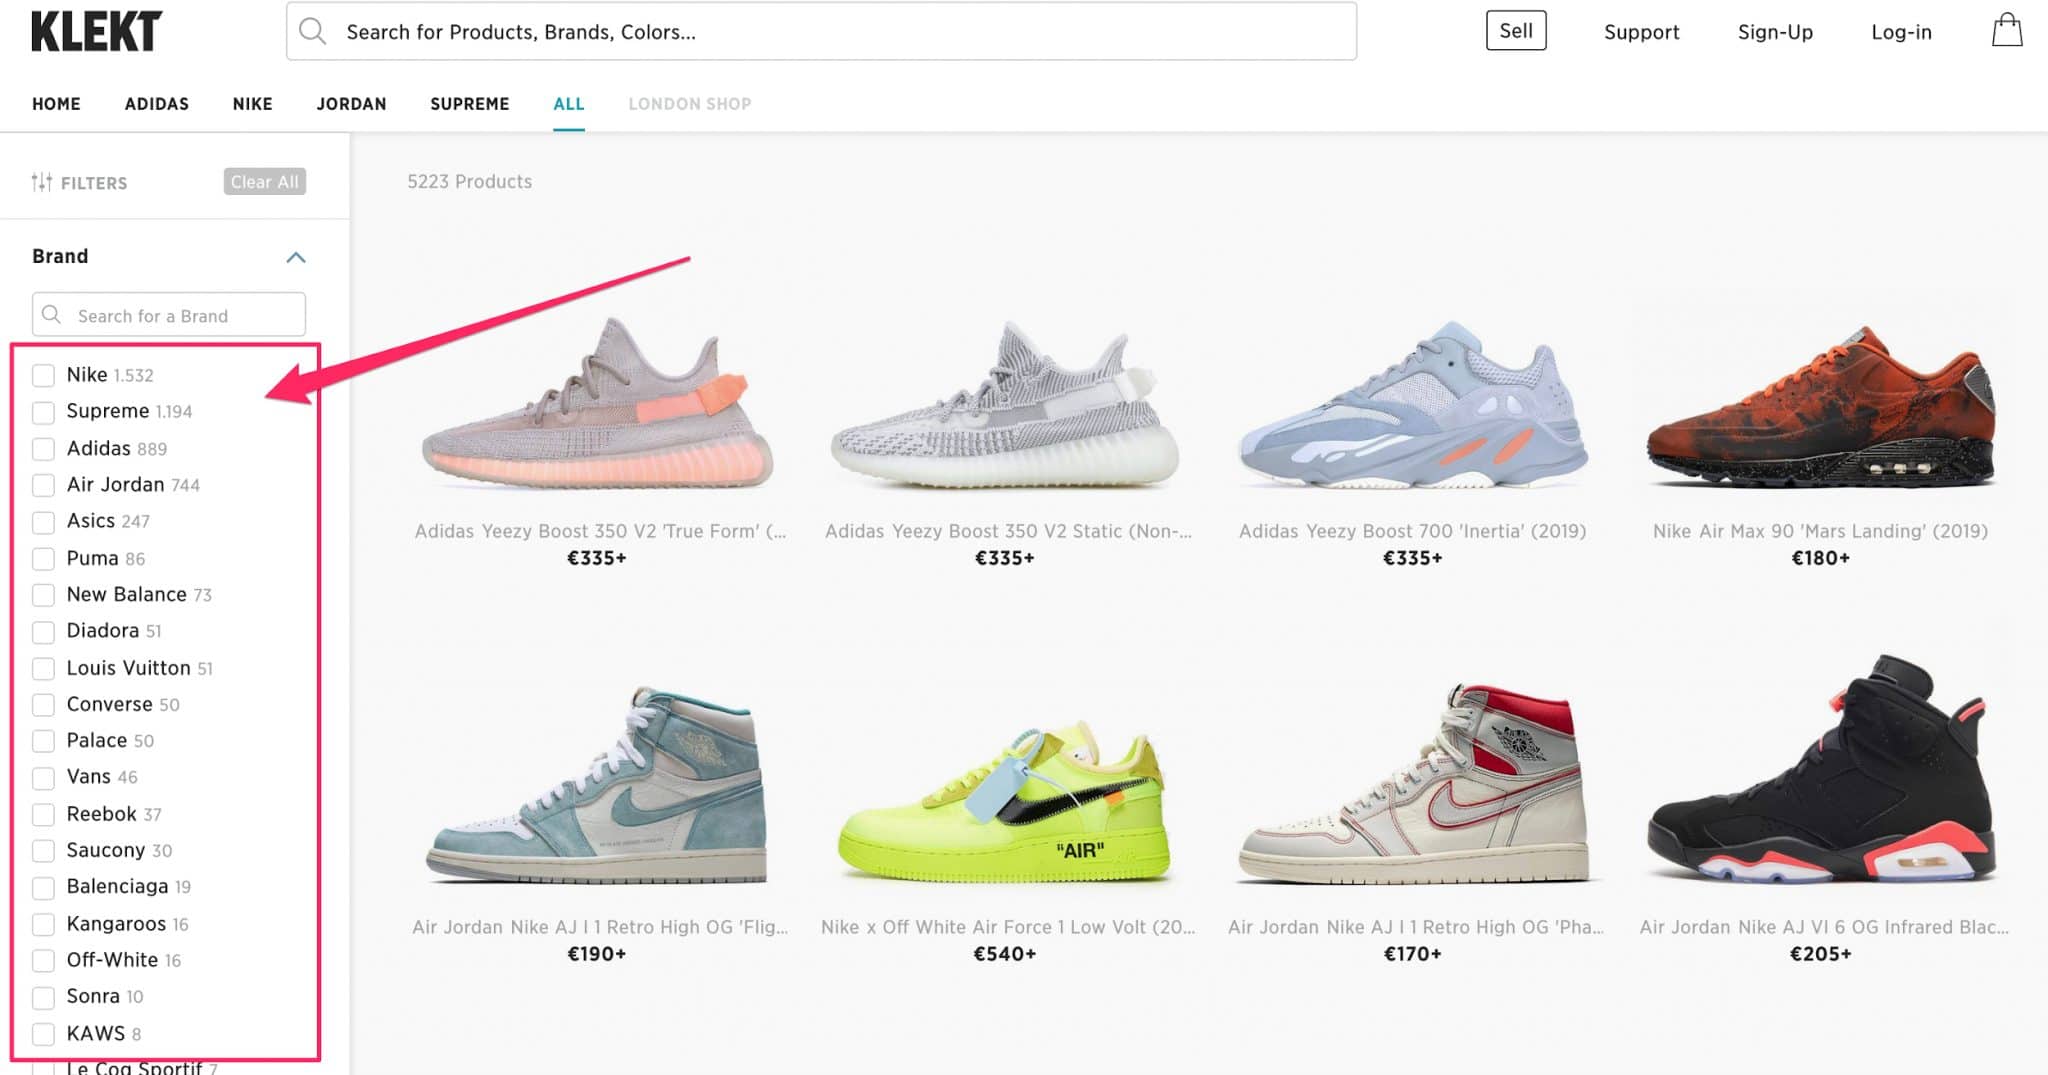 Nike Dunk Low - Buy Nike Dunk Low Sneakers - KLEKT (US)